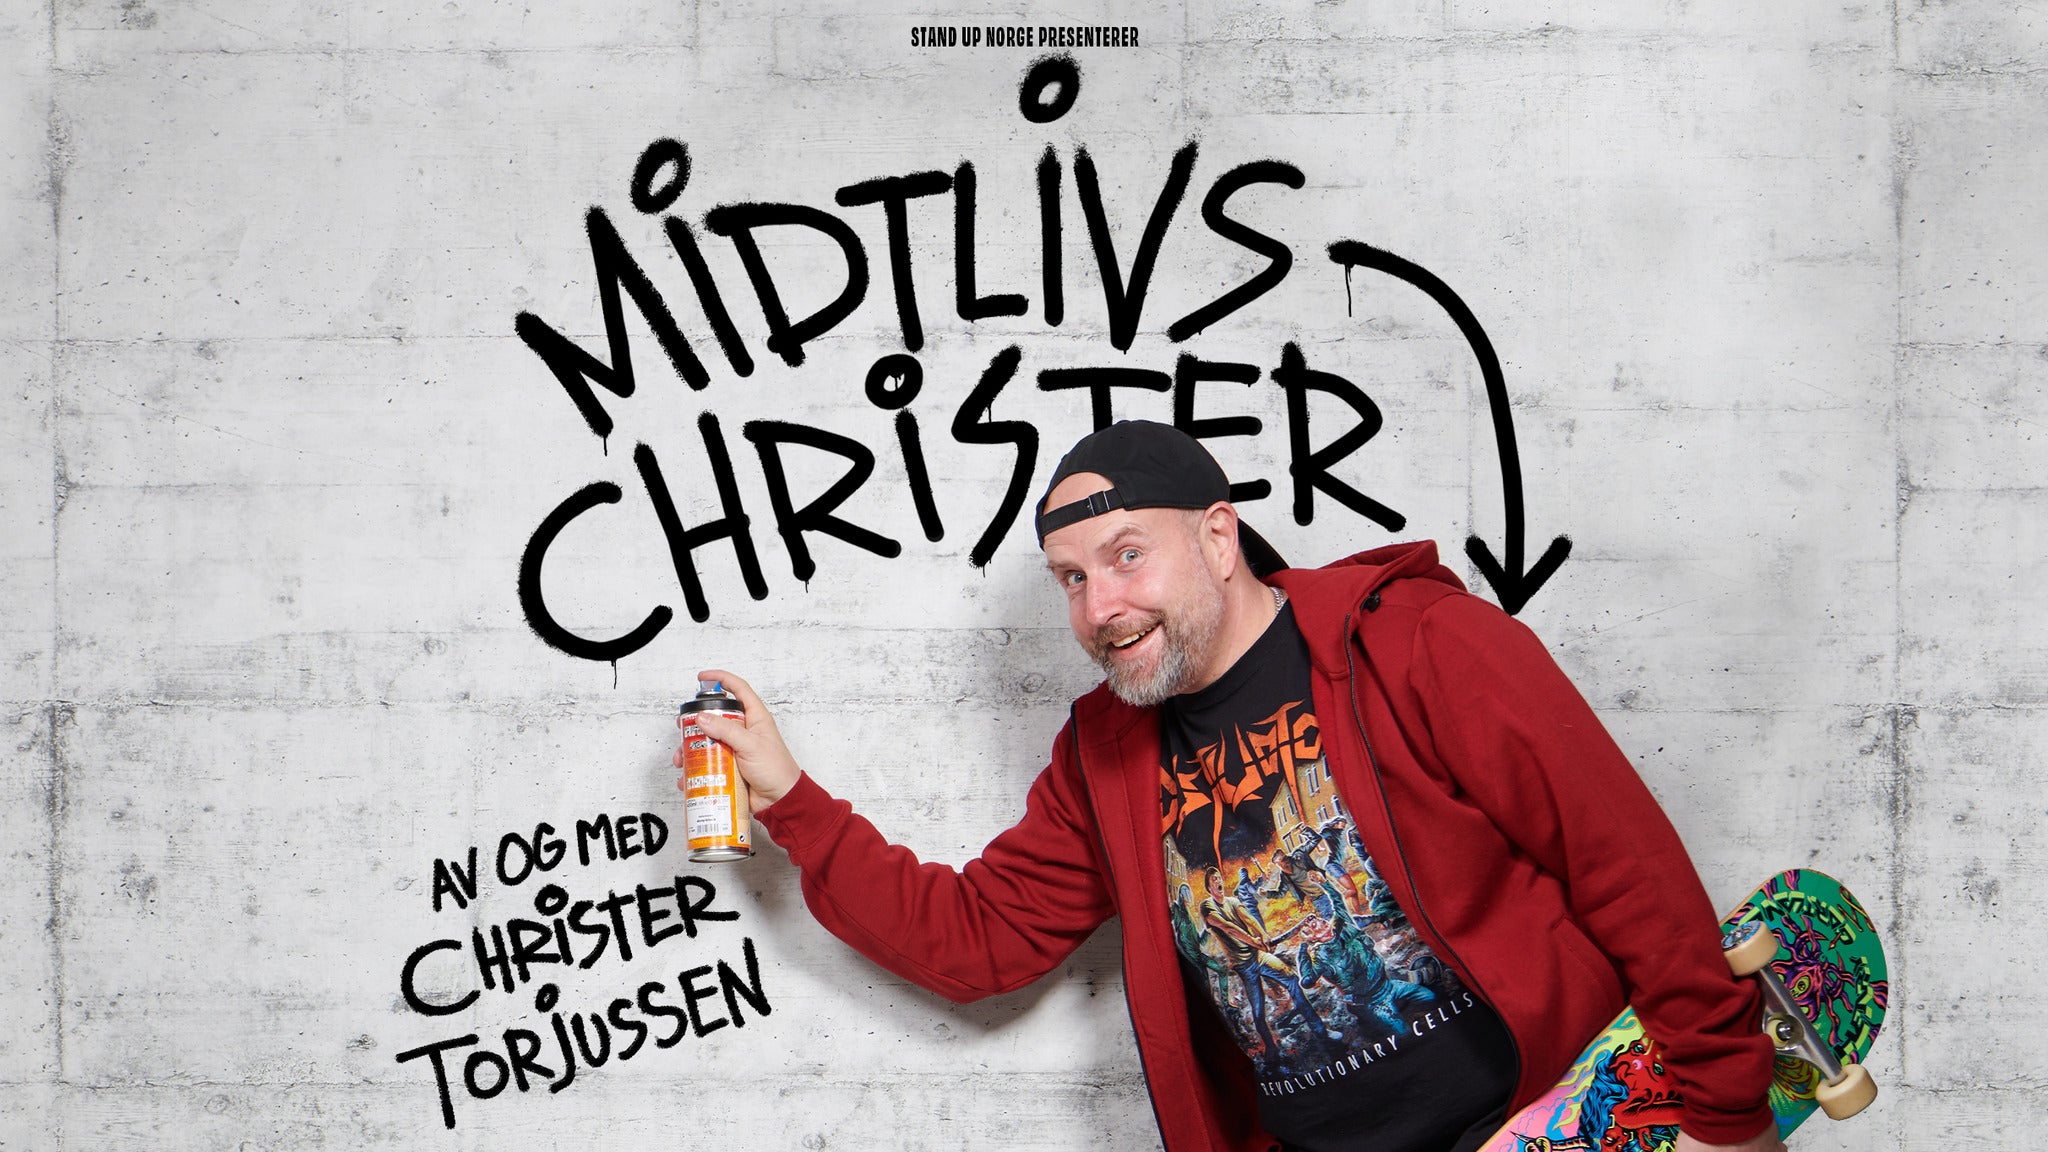 Christer Torjussen Midtlivskrise presale information on freepresalepasswords.com